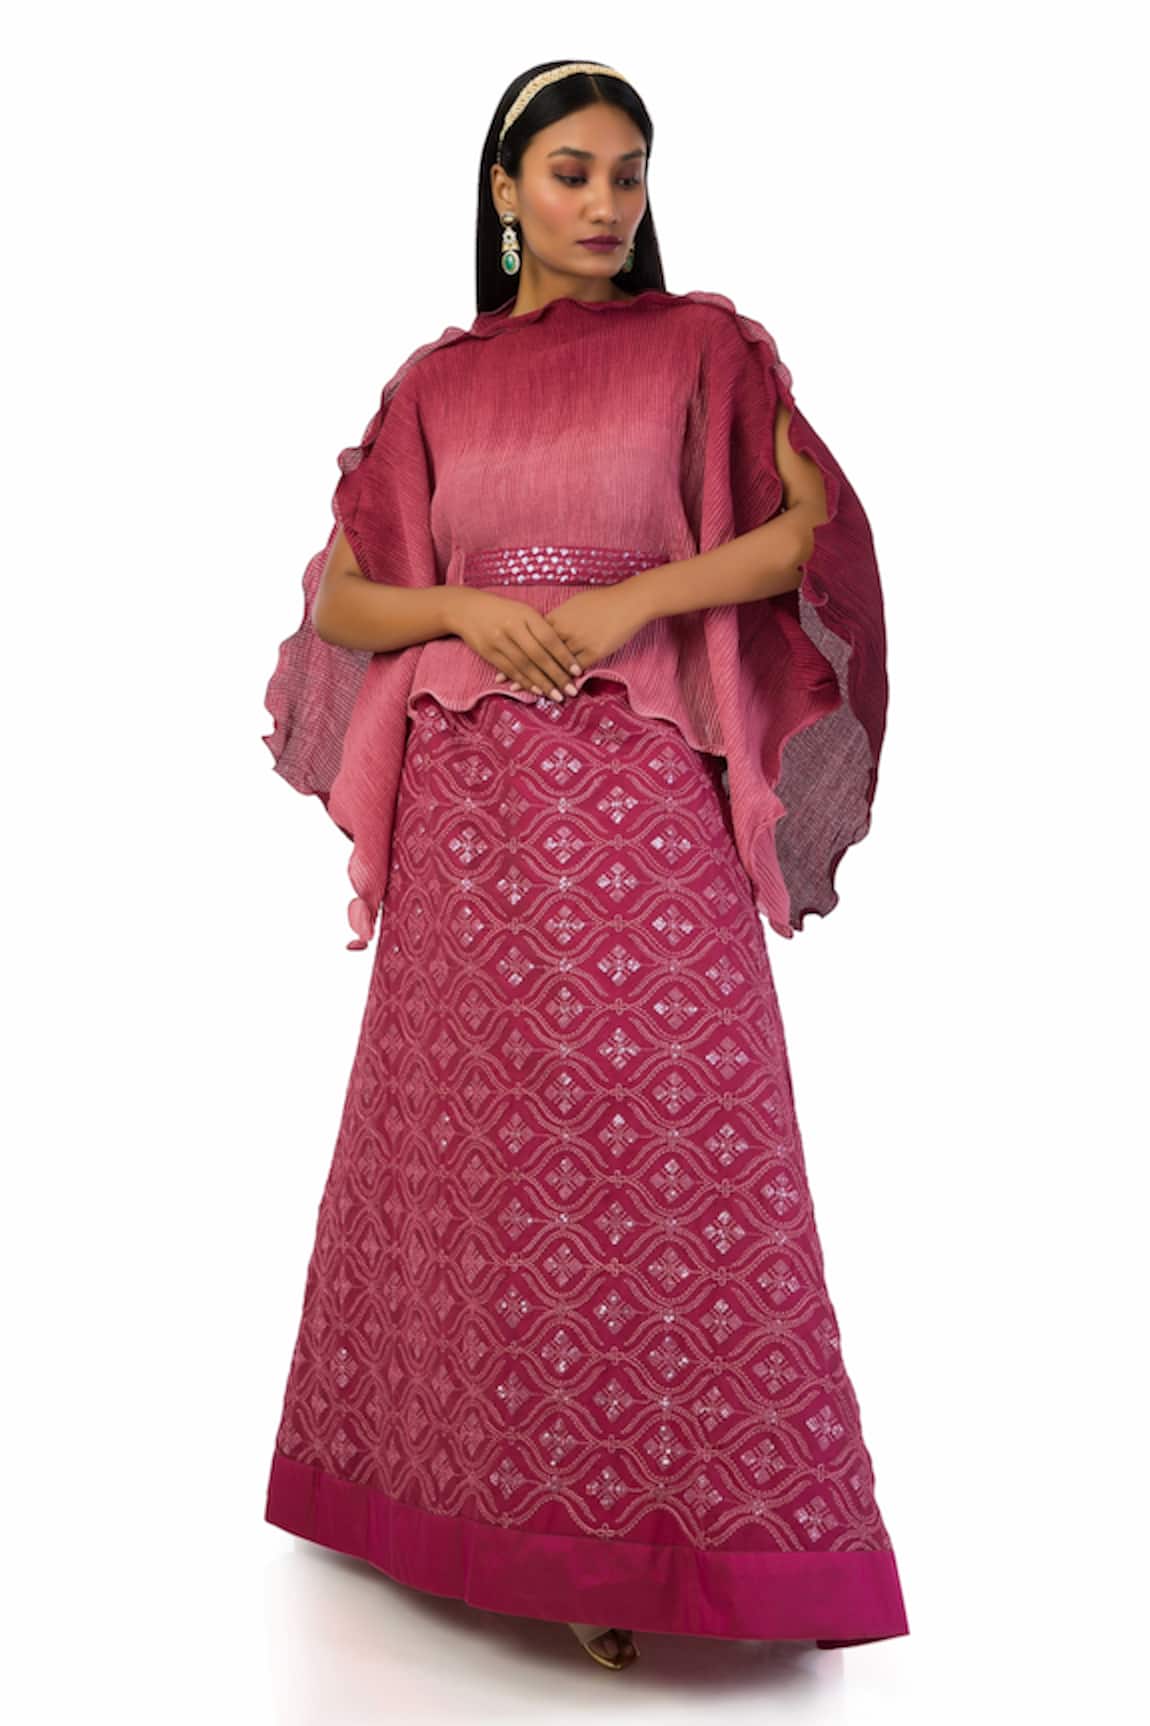 Meghna shah Textured Pattern Kaftan Top & Skirt Set